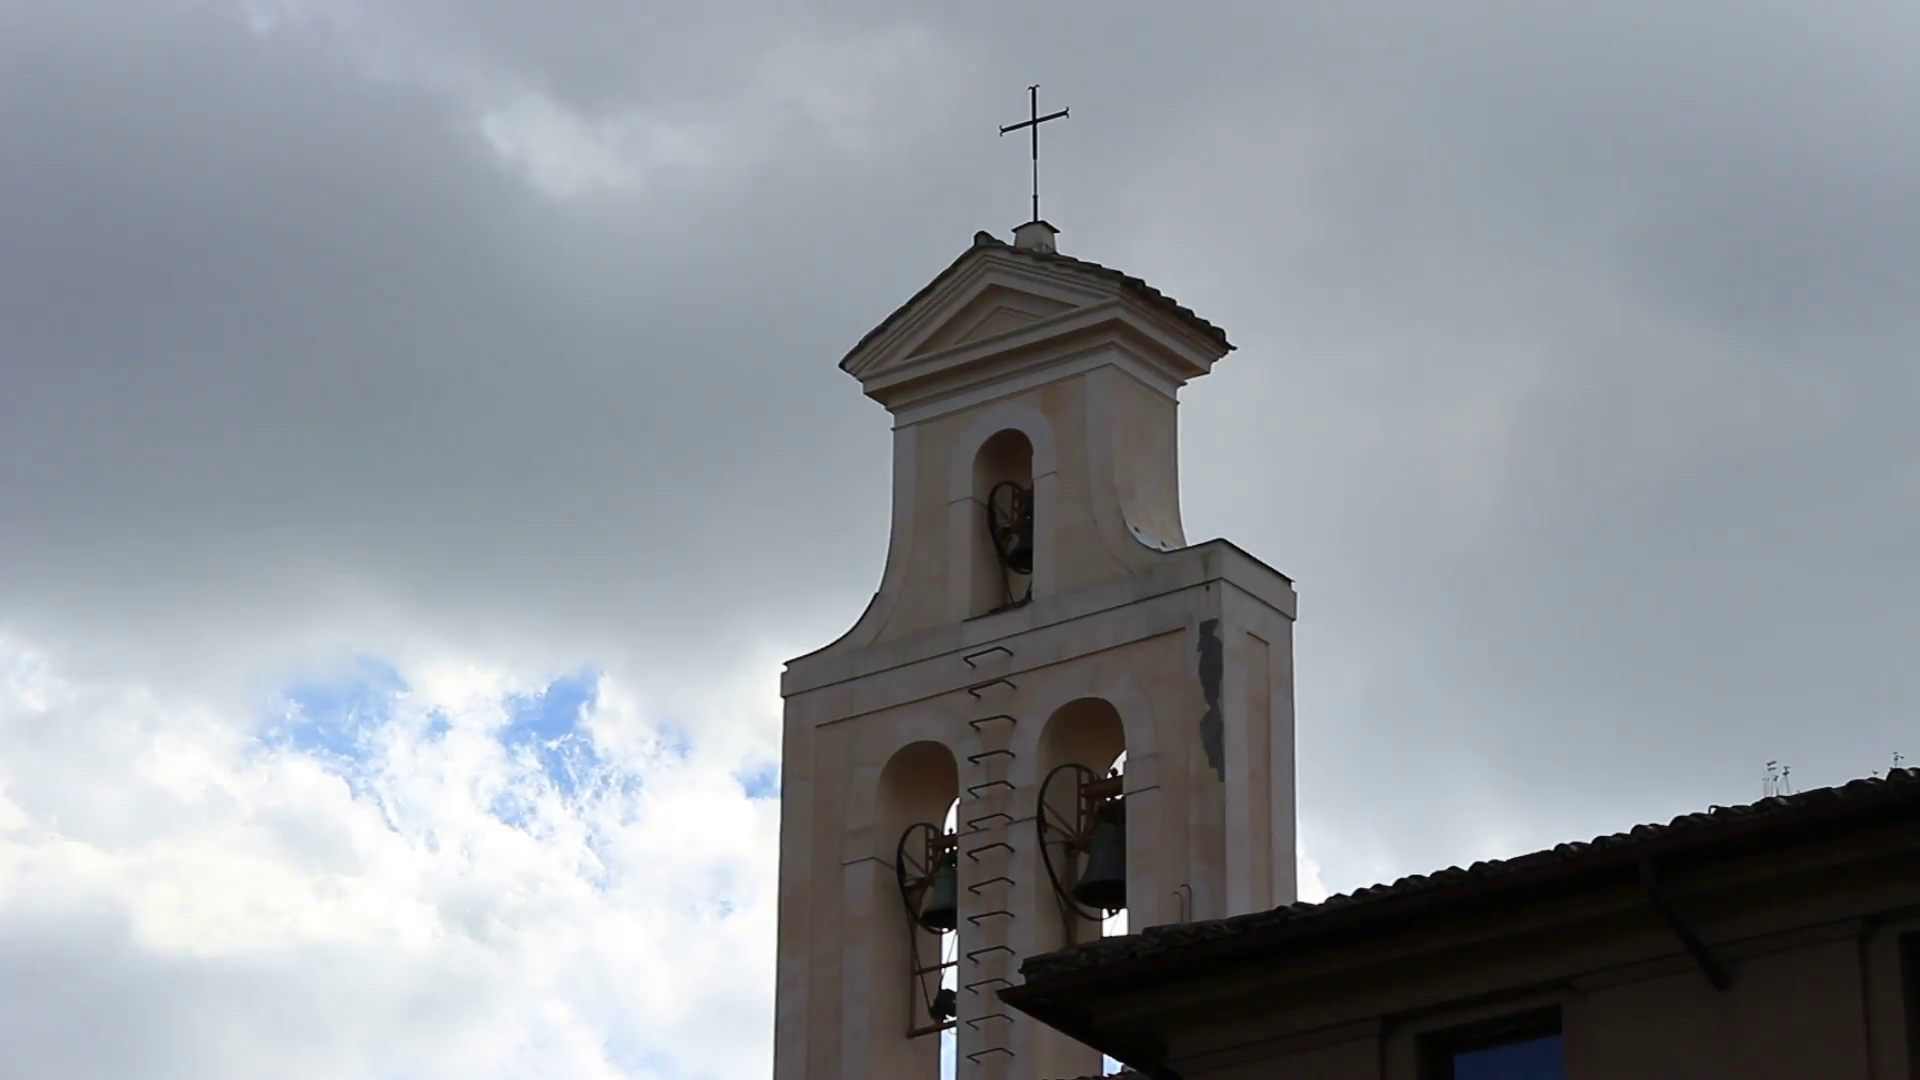 Cloudy church tower photo